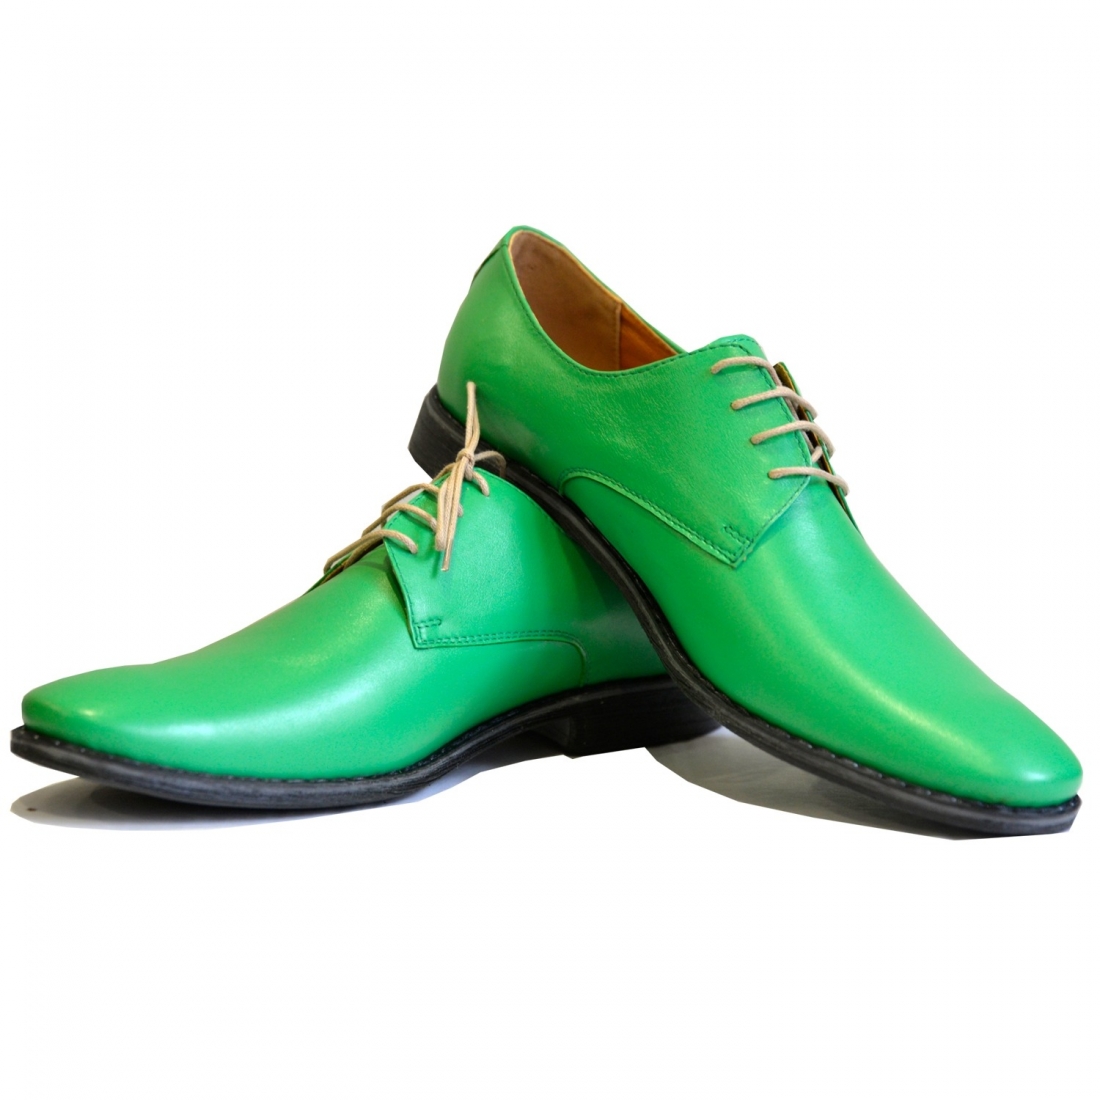 Modello Greanero - Buty Klasyczne - Handmade Colorful Italian Leather Shoes